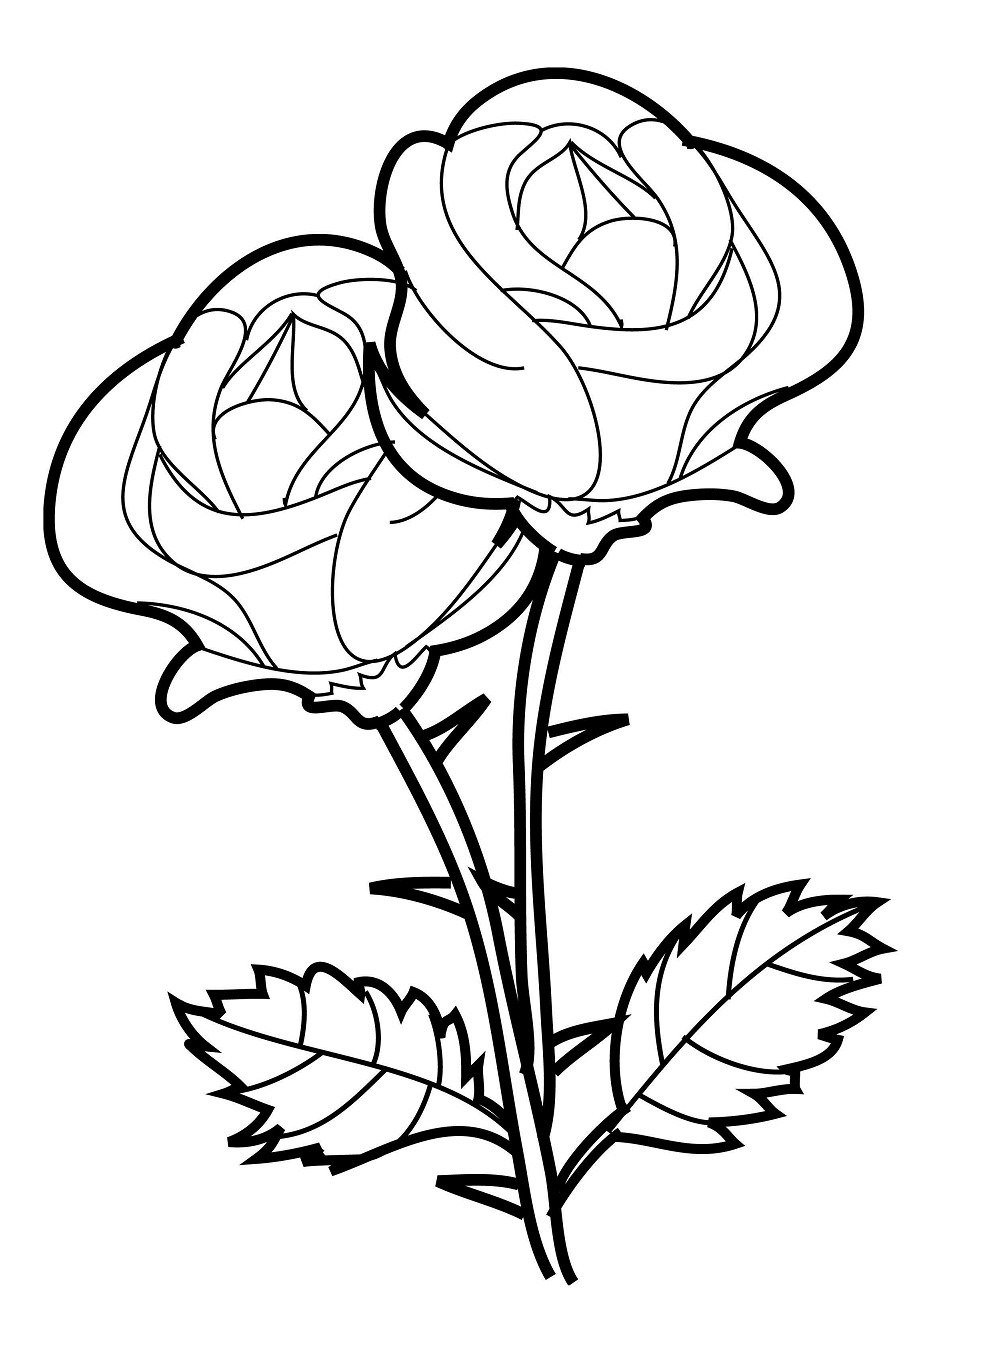 gambar sketsa bunga kreasi warna